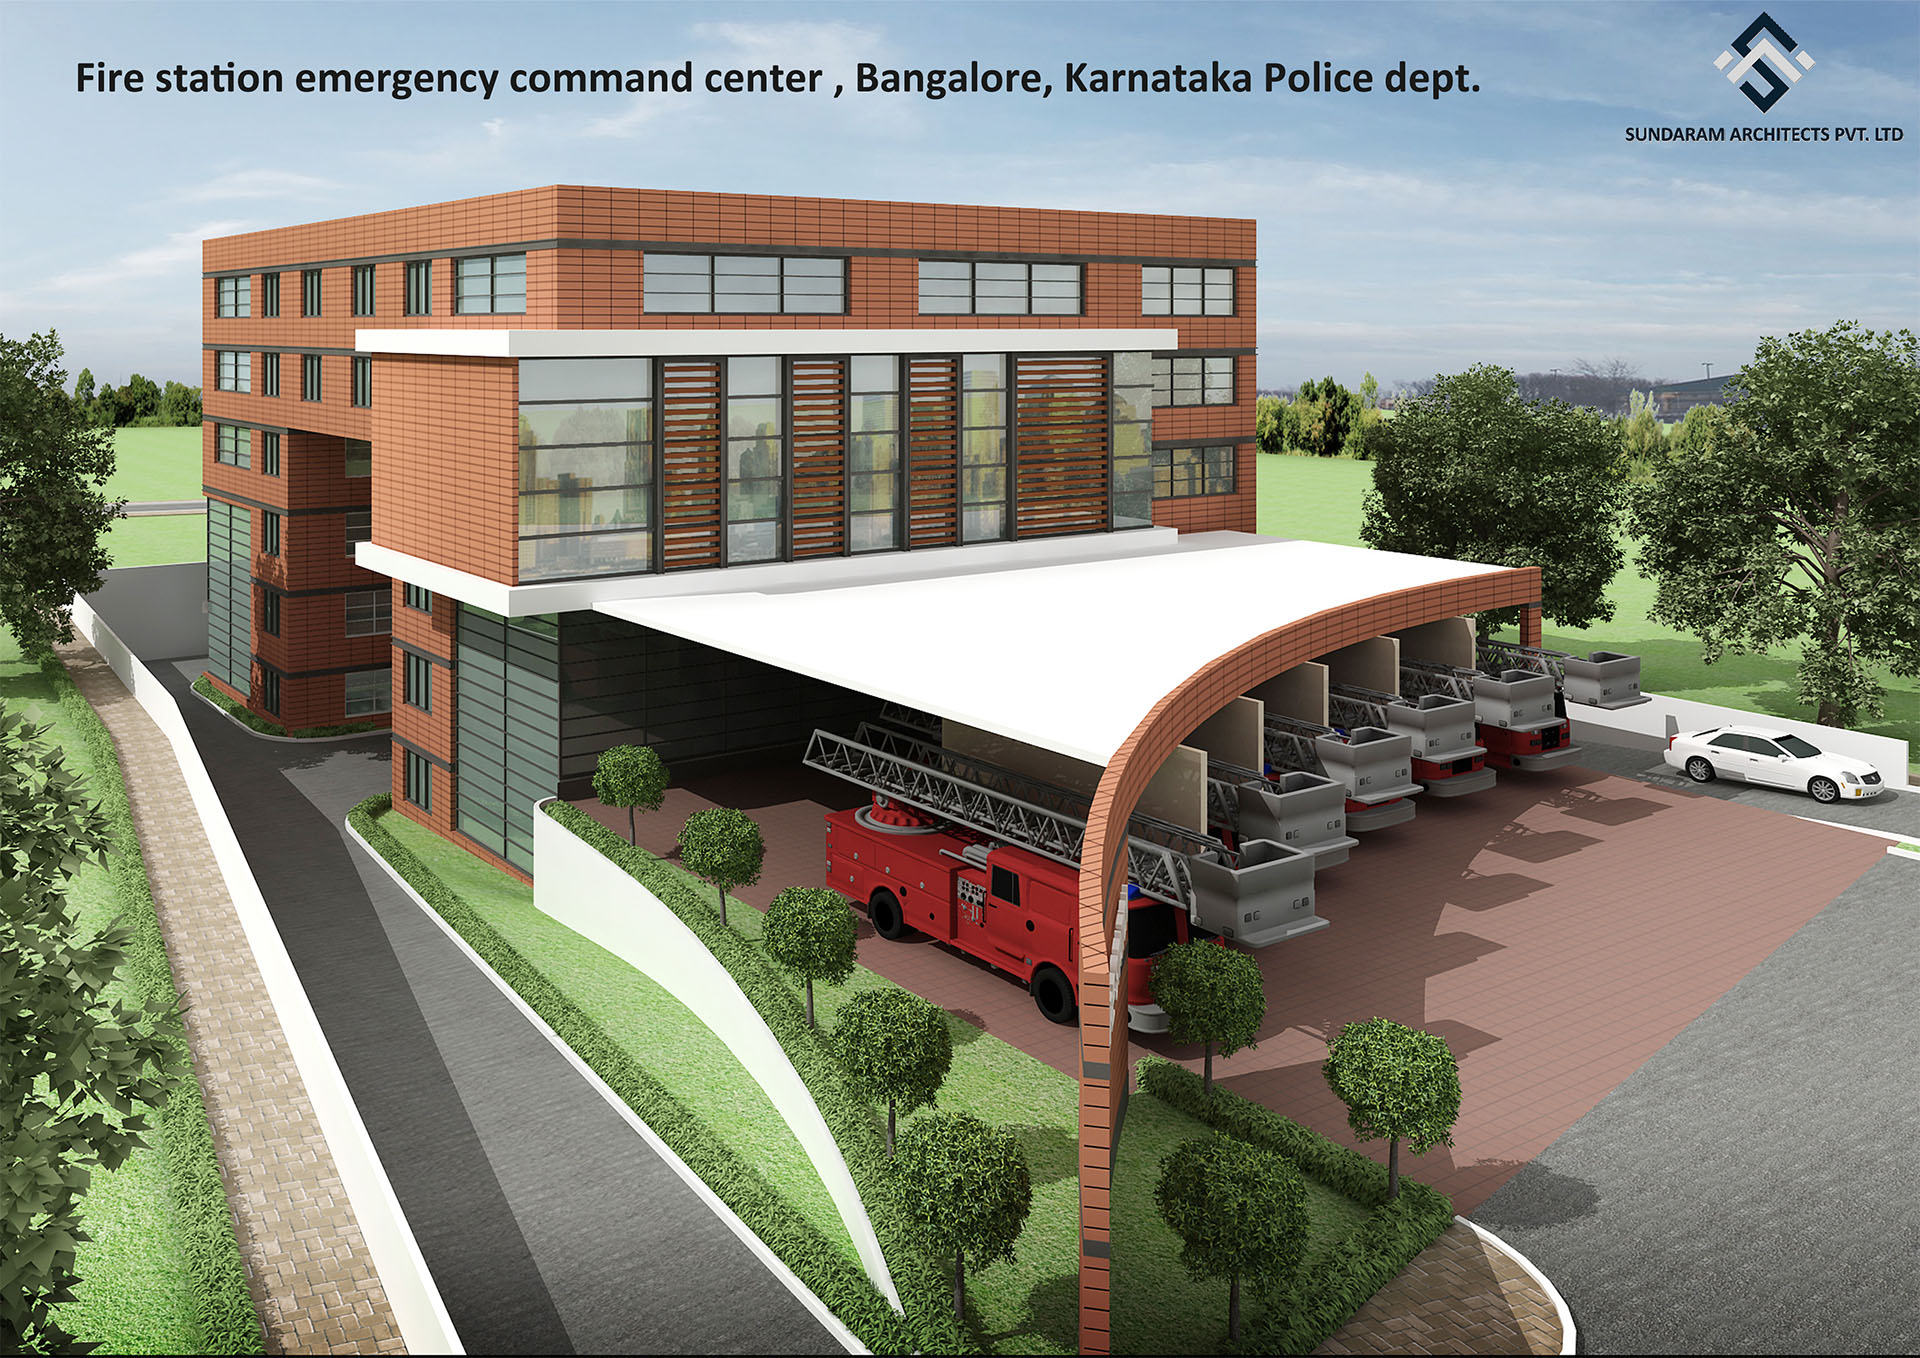 Sundaram Architects designed Fire Station Emergency Command Center, Bangalore, Karnataka Police Station